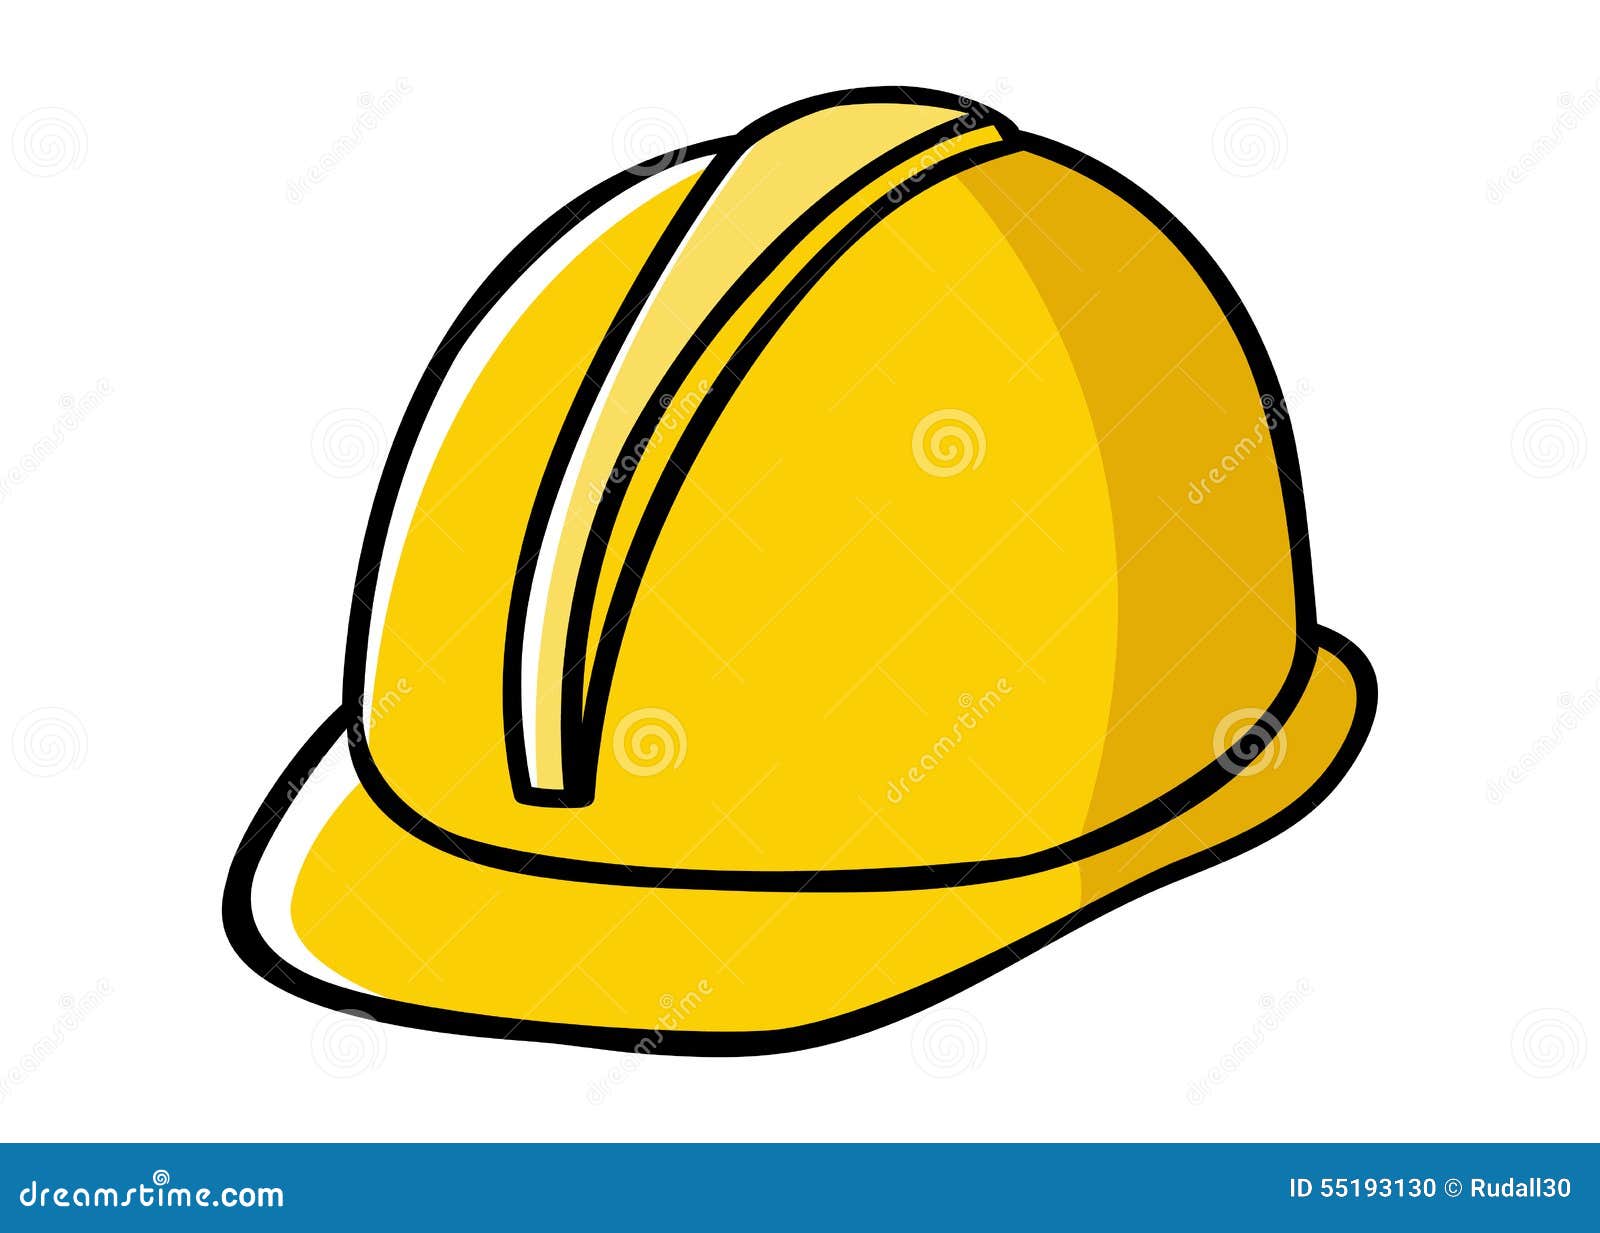 construction hat clipart - photo #42